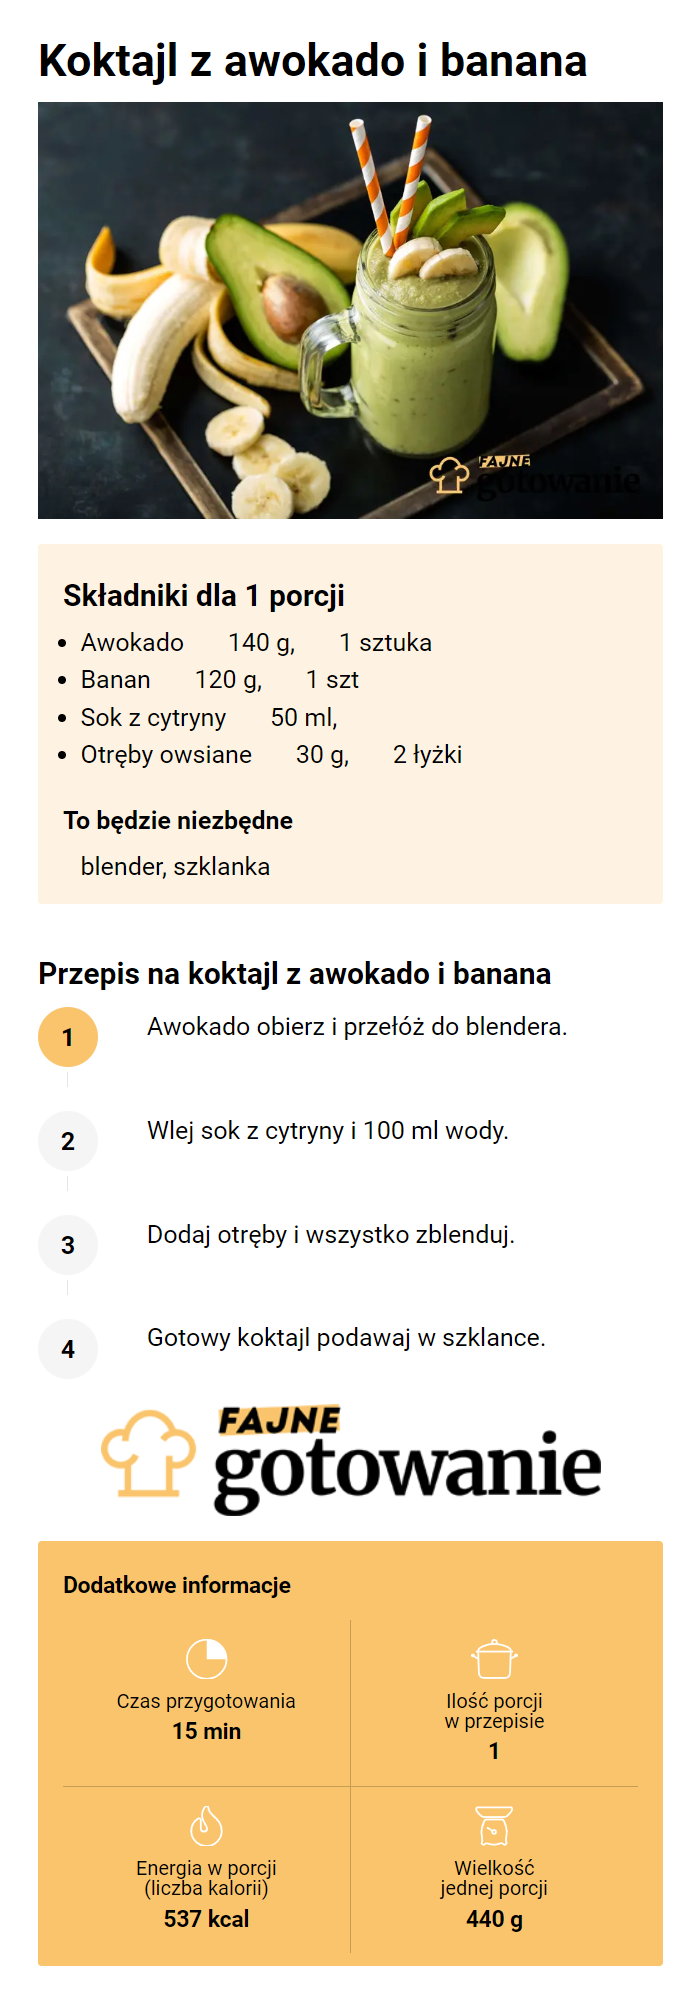 Koktajl z awokado i banana